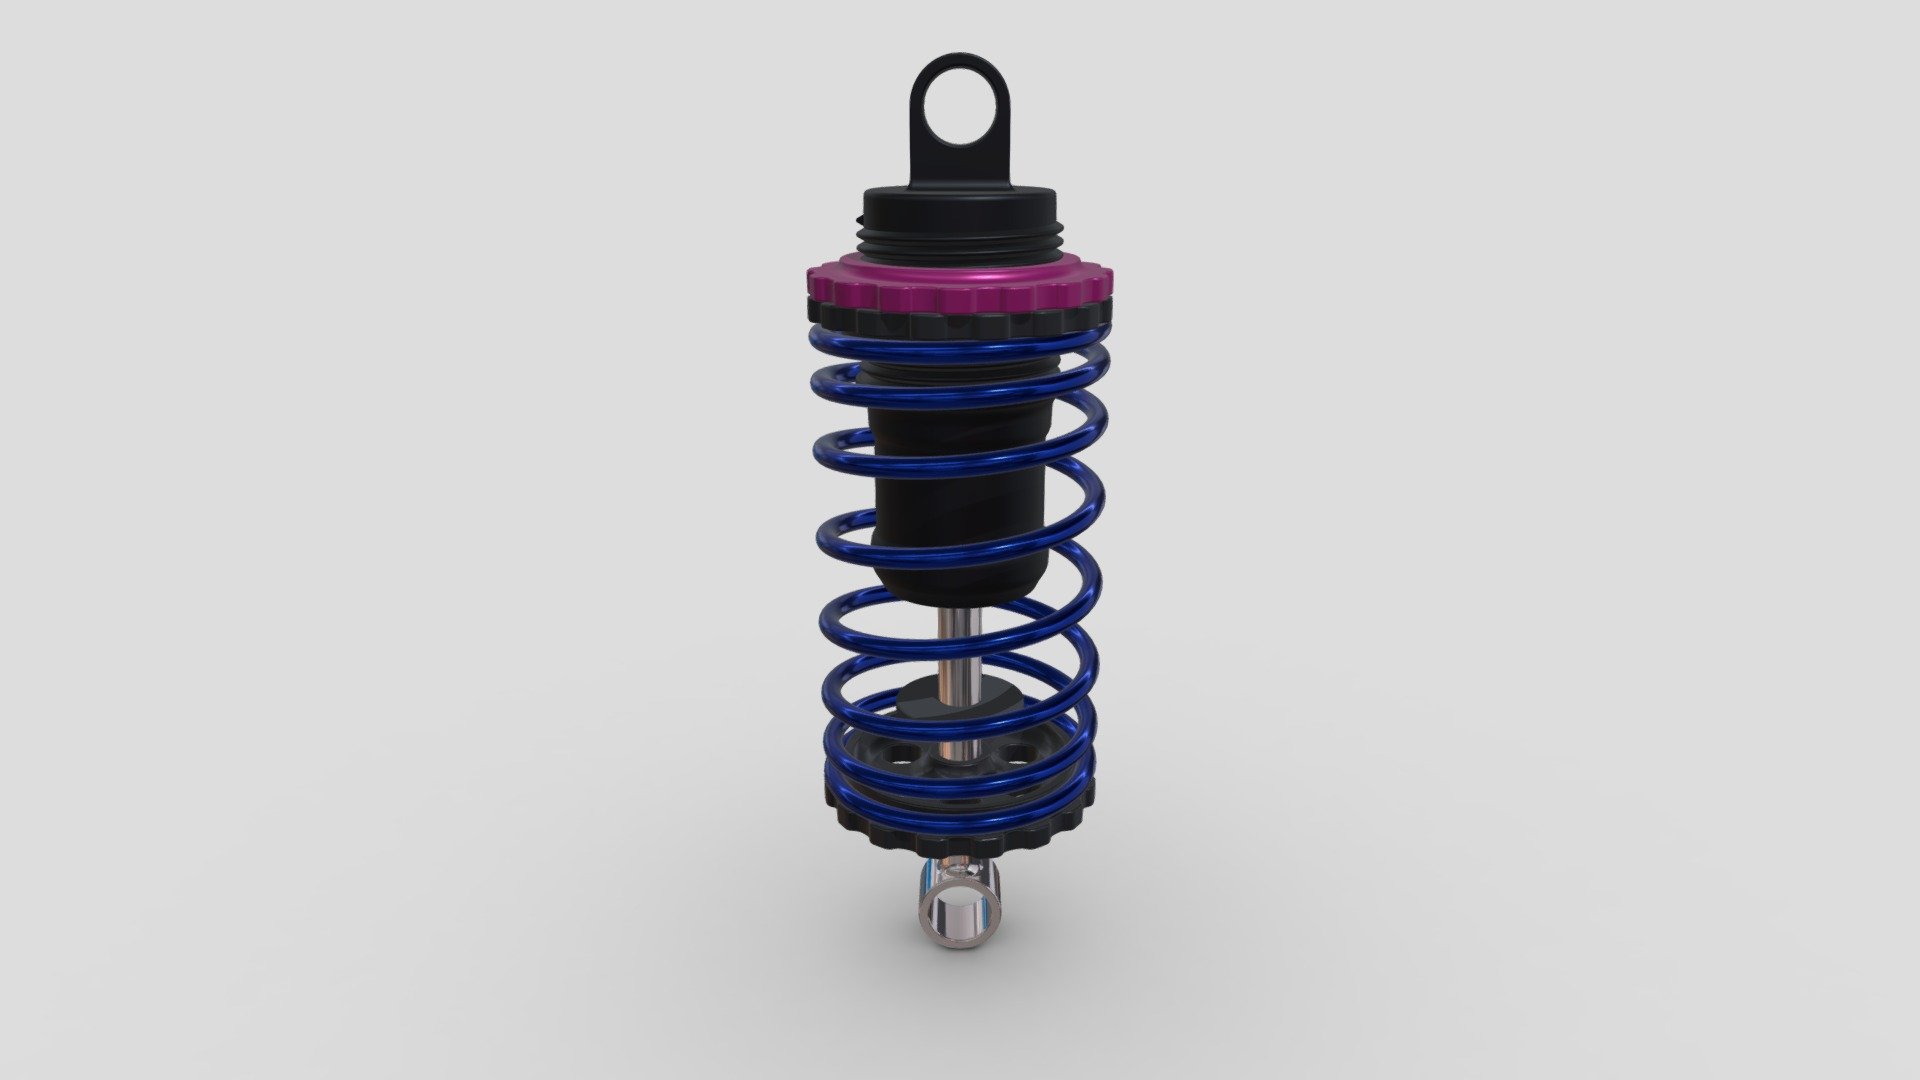 rc car suspension - rc P1 suspension concept pastel colour - 3D model by FPS_Design 3d model